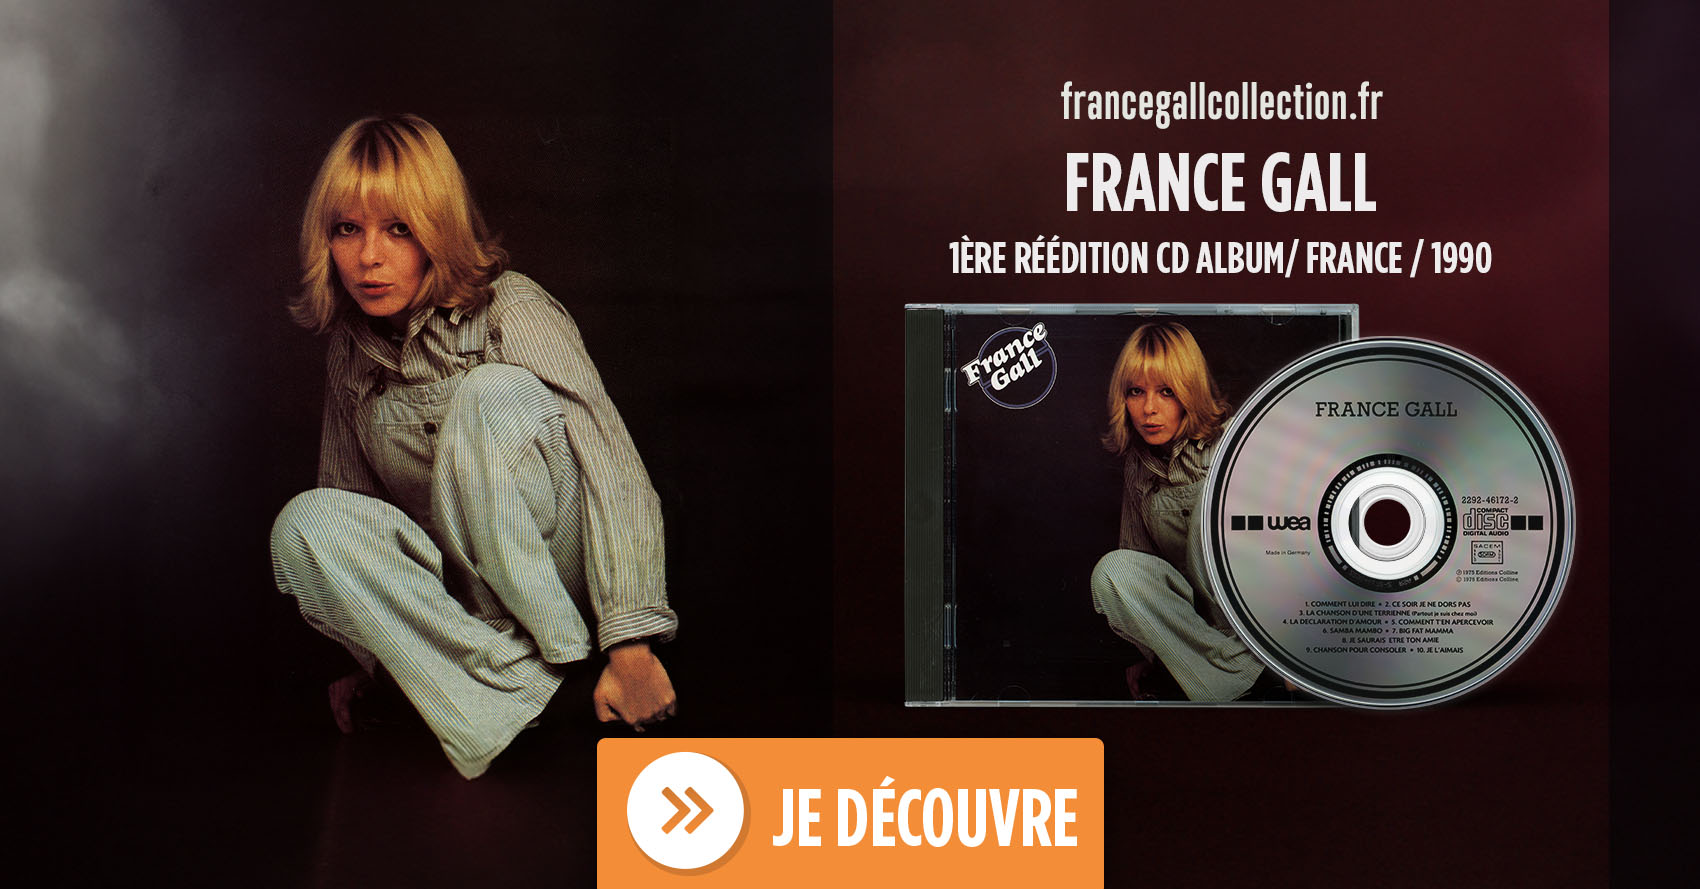 Enregistré fin 1975, France Gall est le premier album studio de France Gall et le premier album que Michel Berger a produit pour elle.